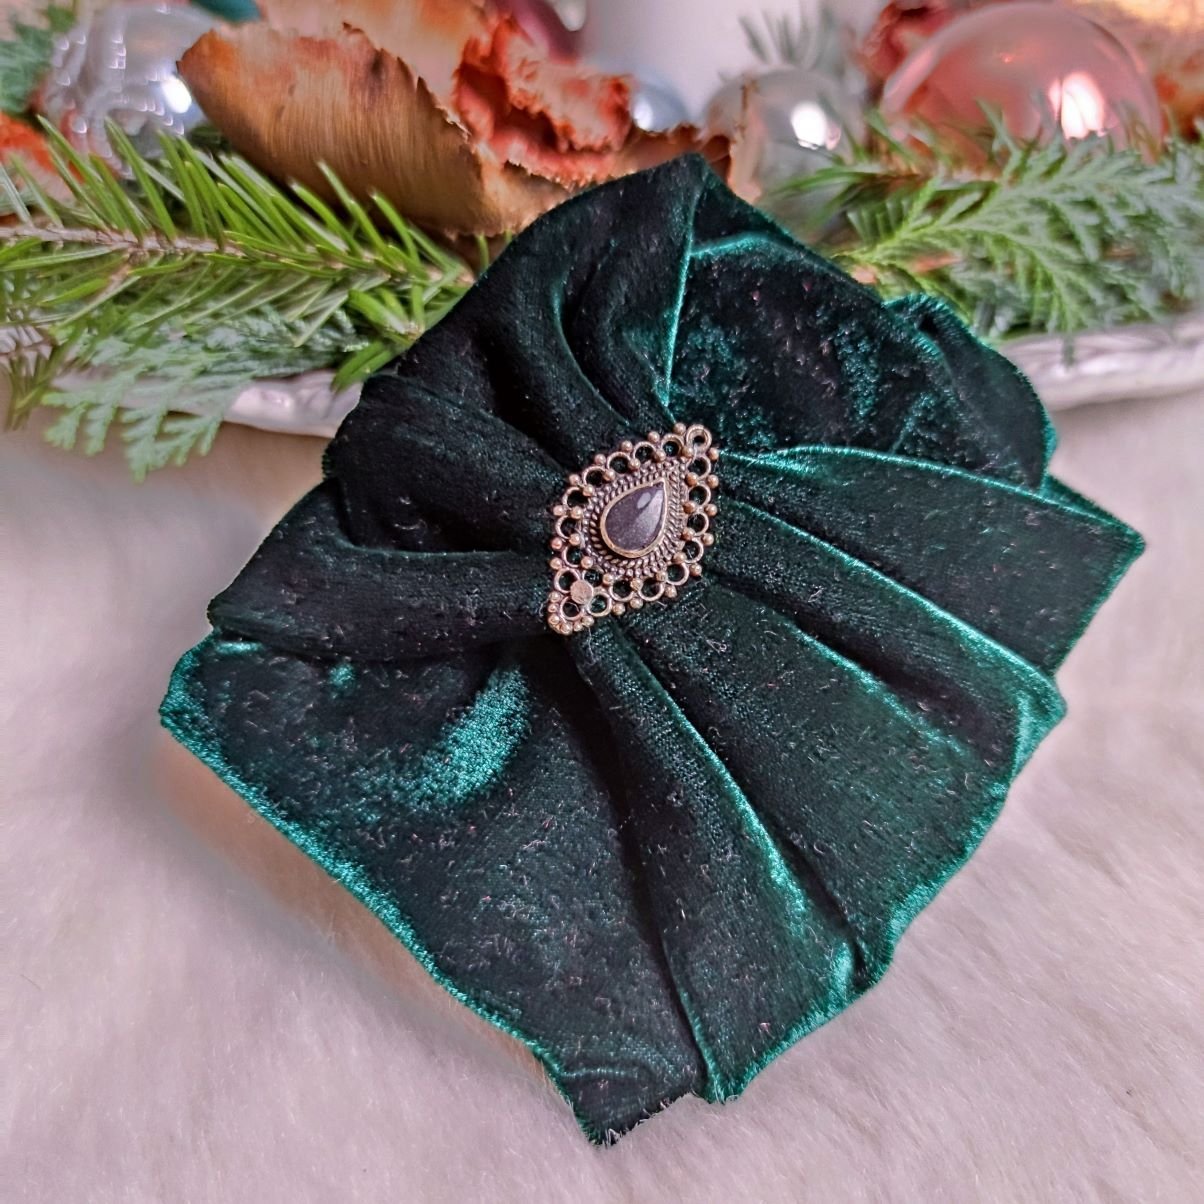 Serayi Haarband in Smaragdgrün aus Samt - mit Edelsteinen verziert